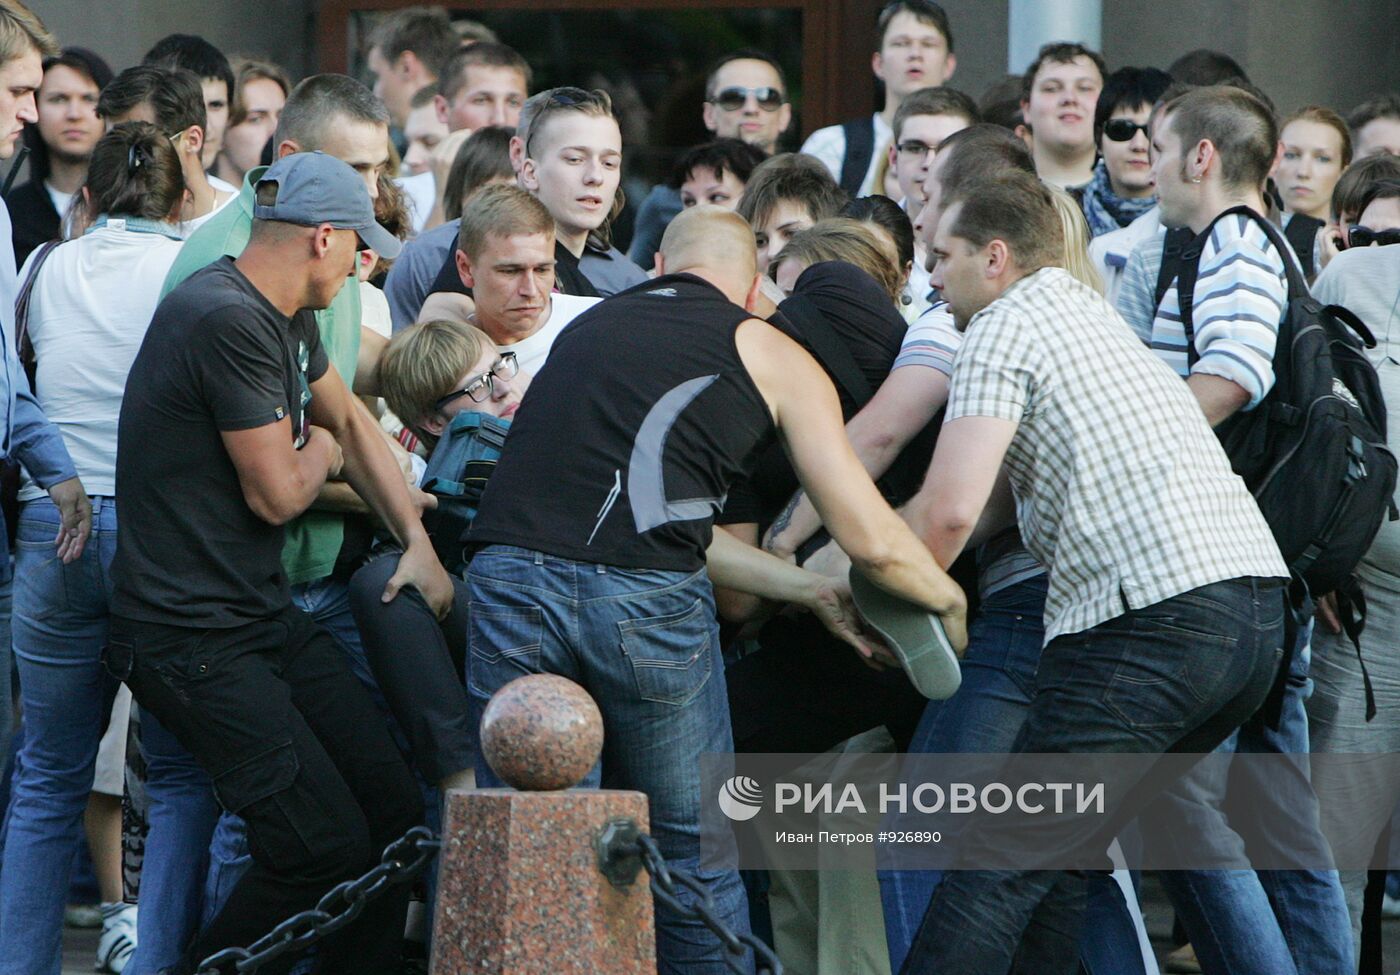 Акция "Революция через социальную сеть" в Минске